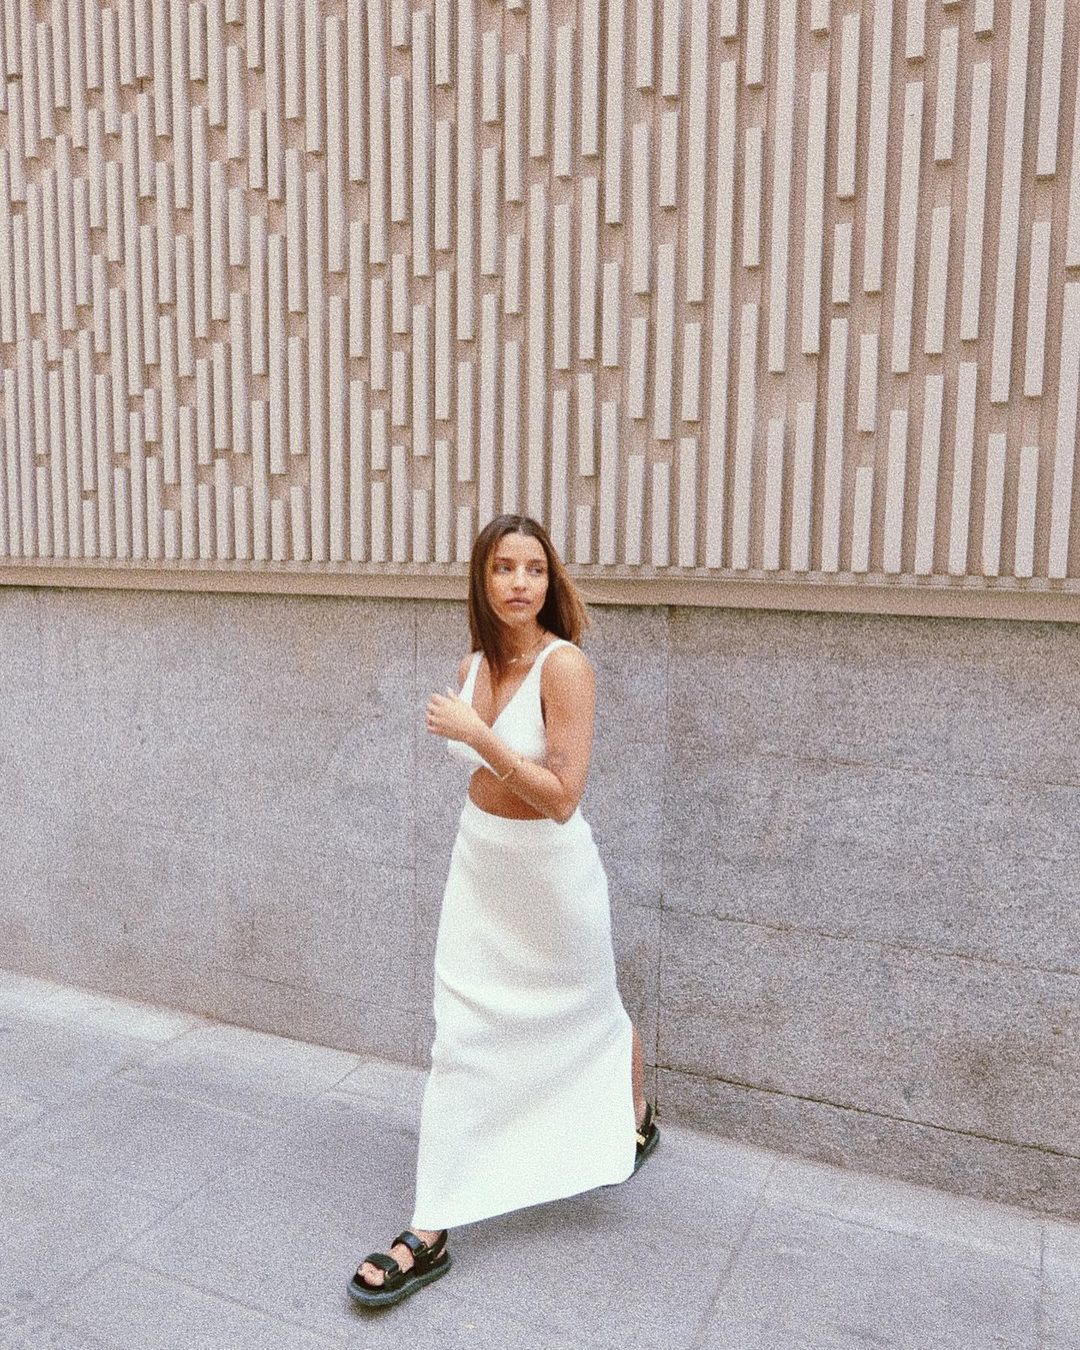 Julia Wieniawa na sesji w Madrycie
Instagram/juliawieniawa